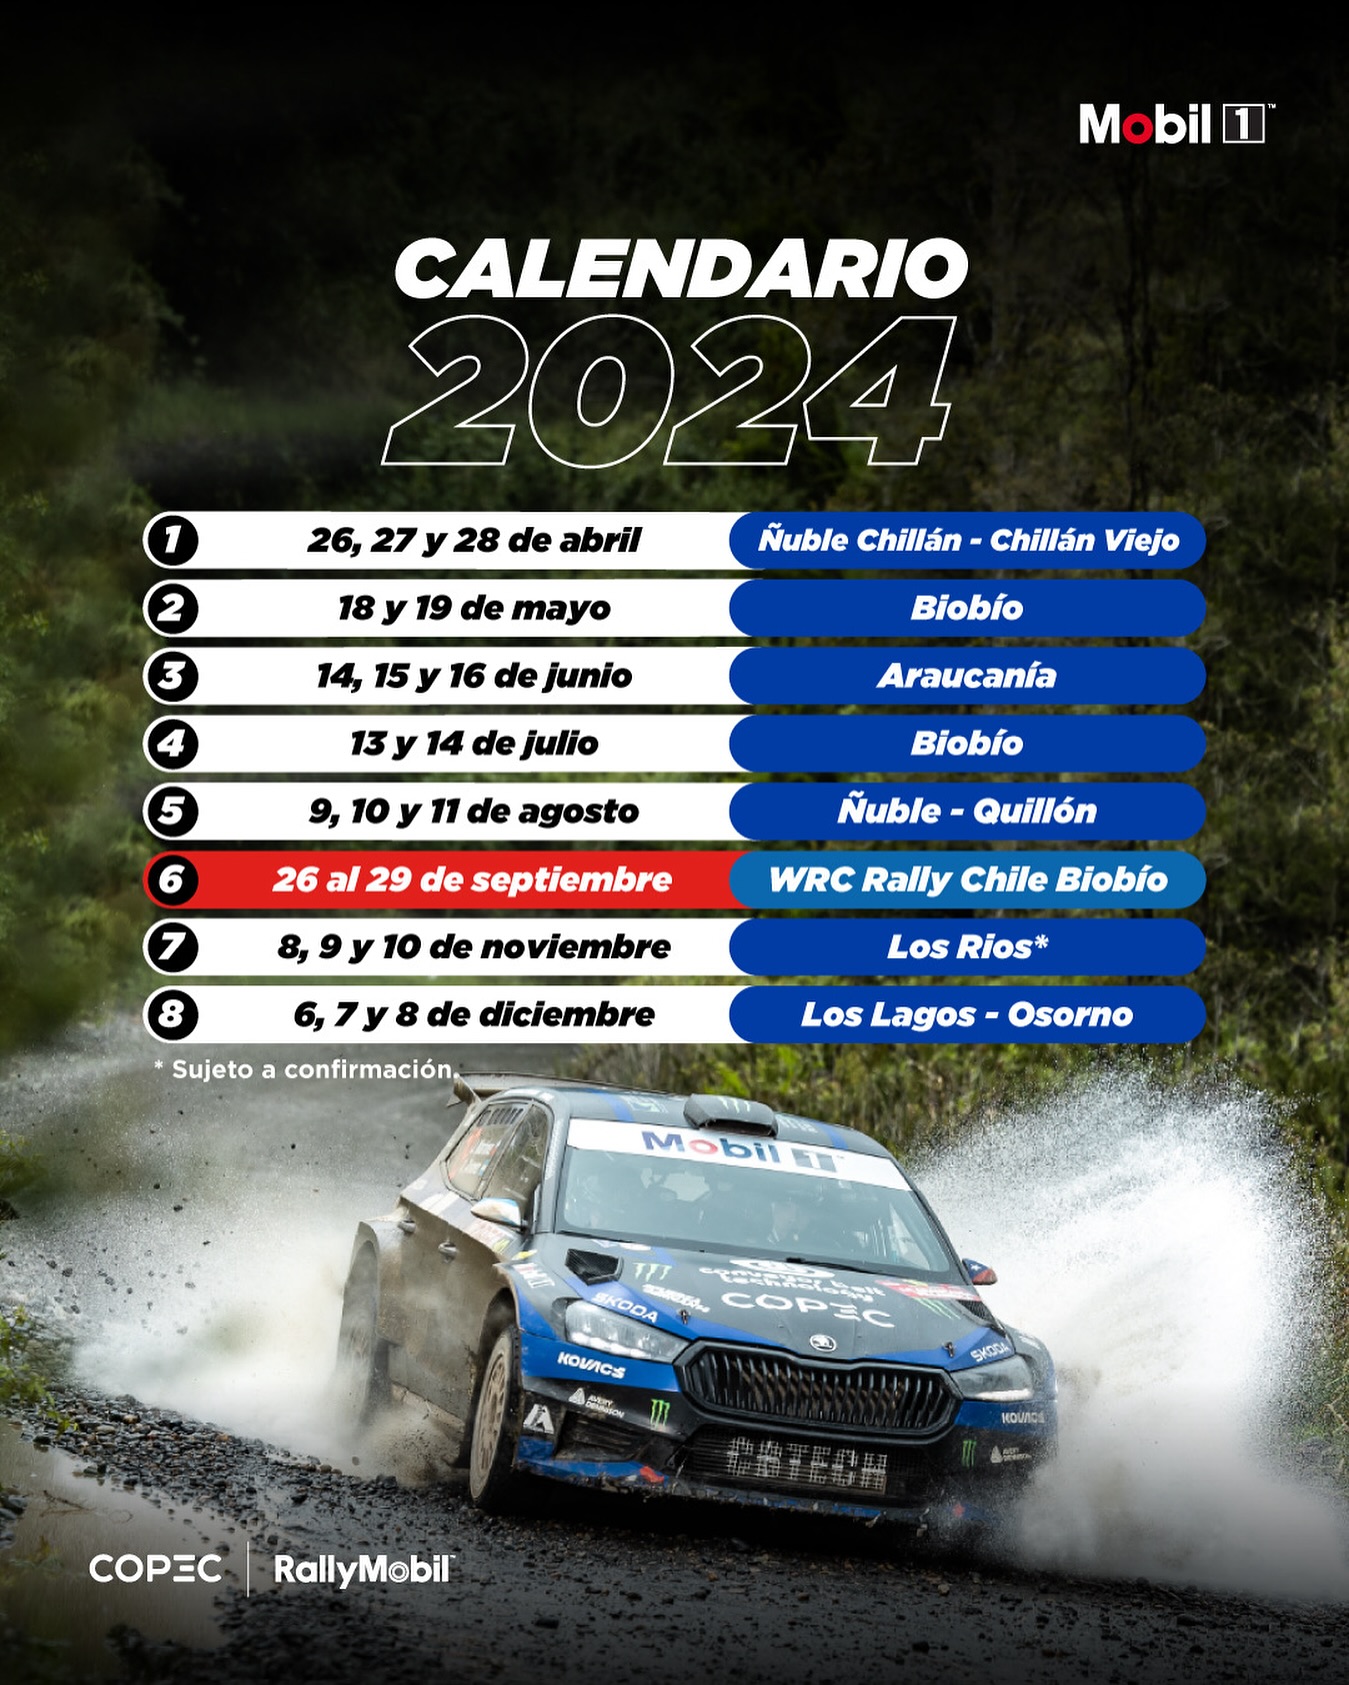 El calendario 2024 / Rallymobil.cl